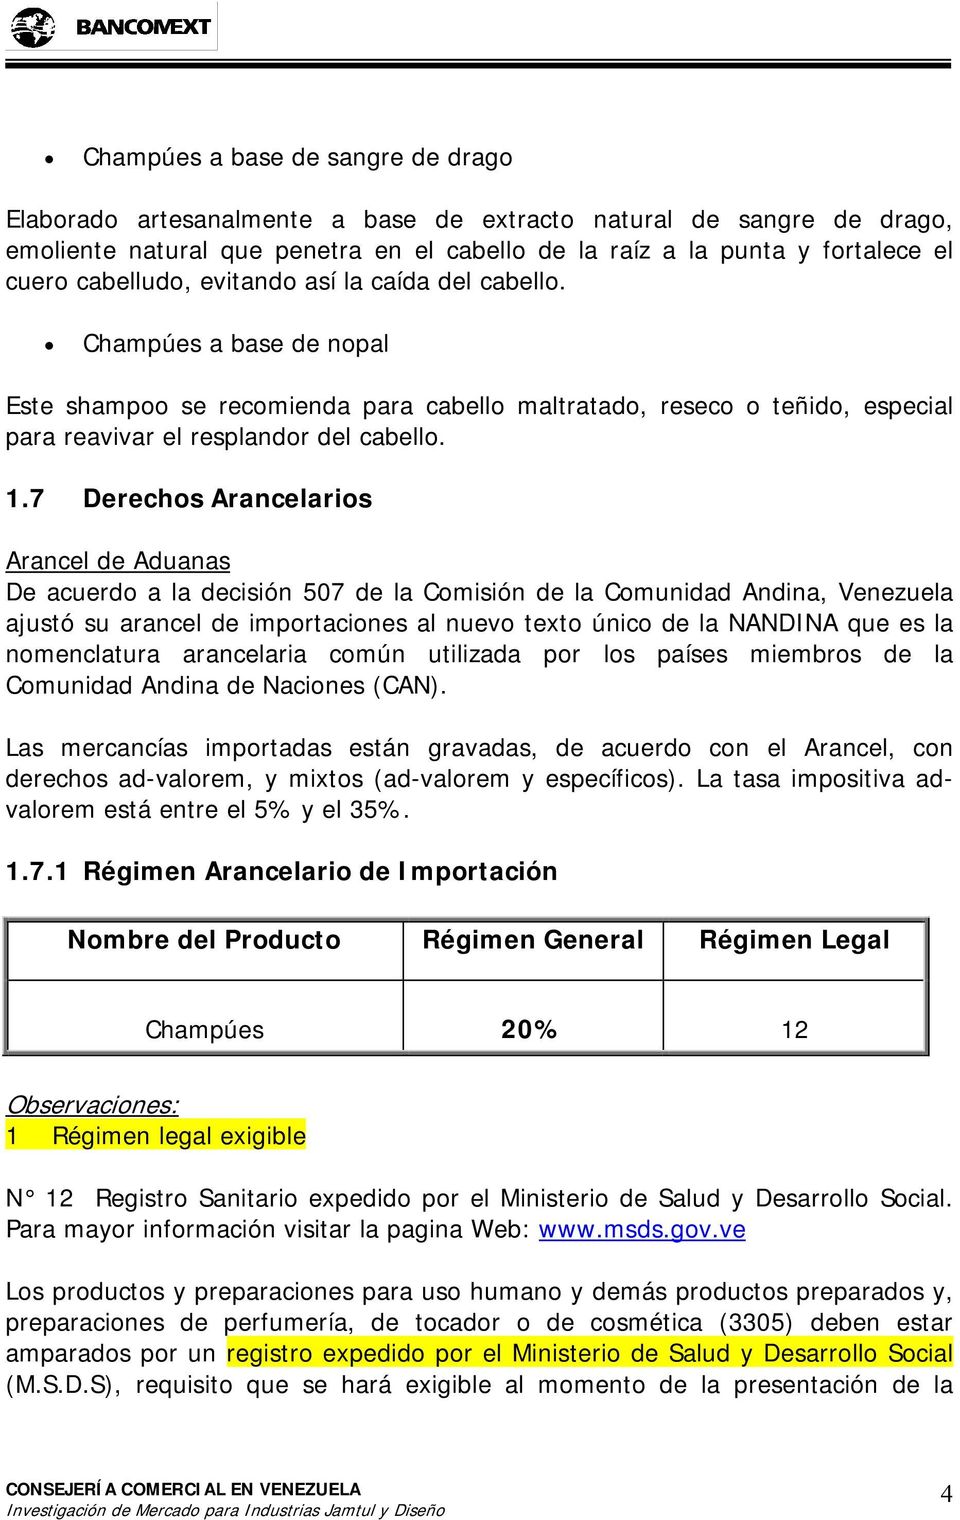 7 Derechos Arancelarios Arancel de Aduanas De acuerdo a la decisión 507 de la Comisión de la Comunidad Andina, Venezuela ajustó su arancel de importaciones al nuevo texto único de la NANDINA que es